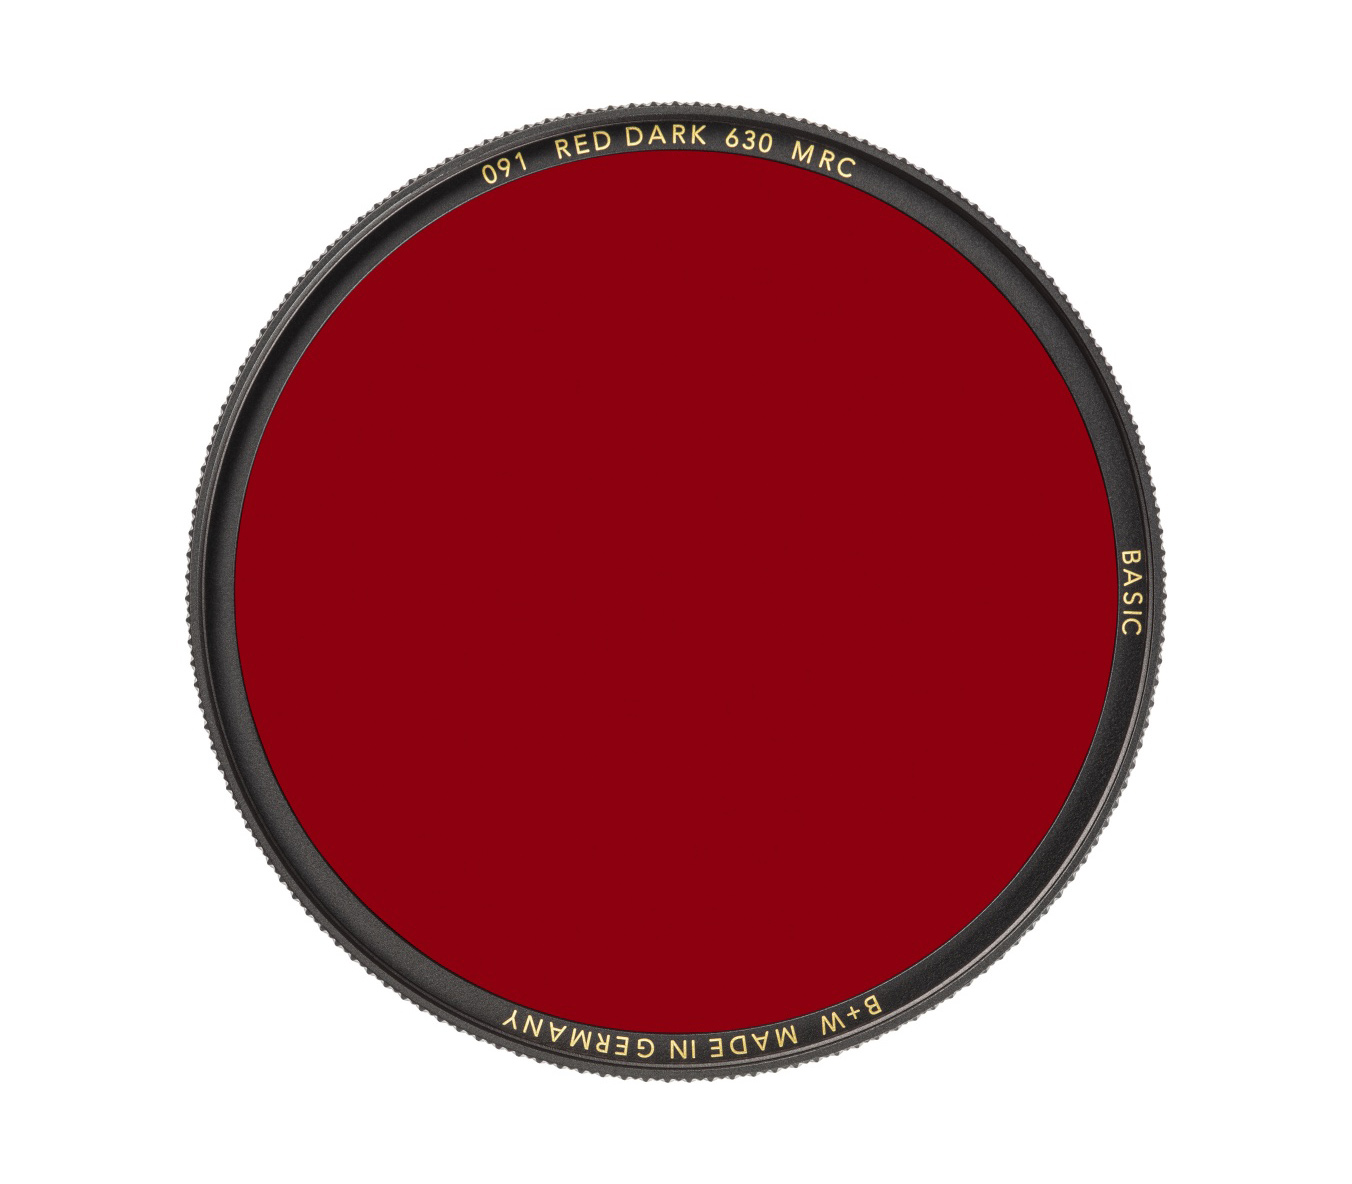 BASIC 091 Red dark MRC 630 49mm